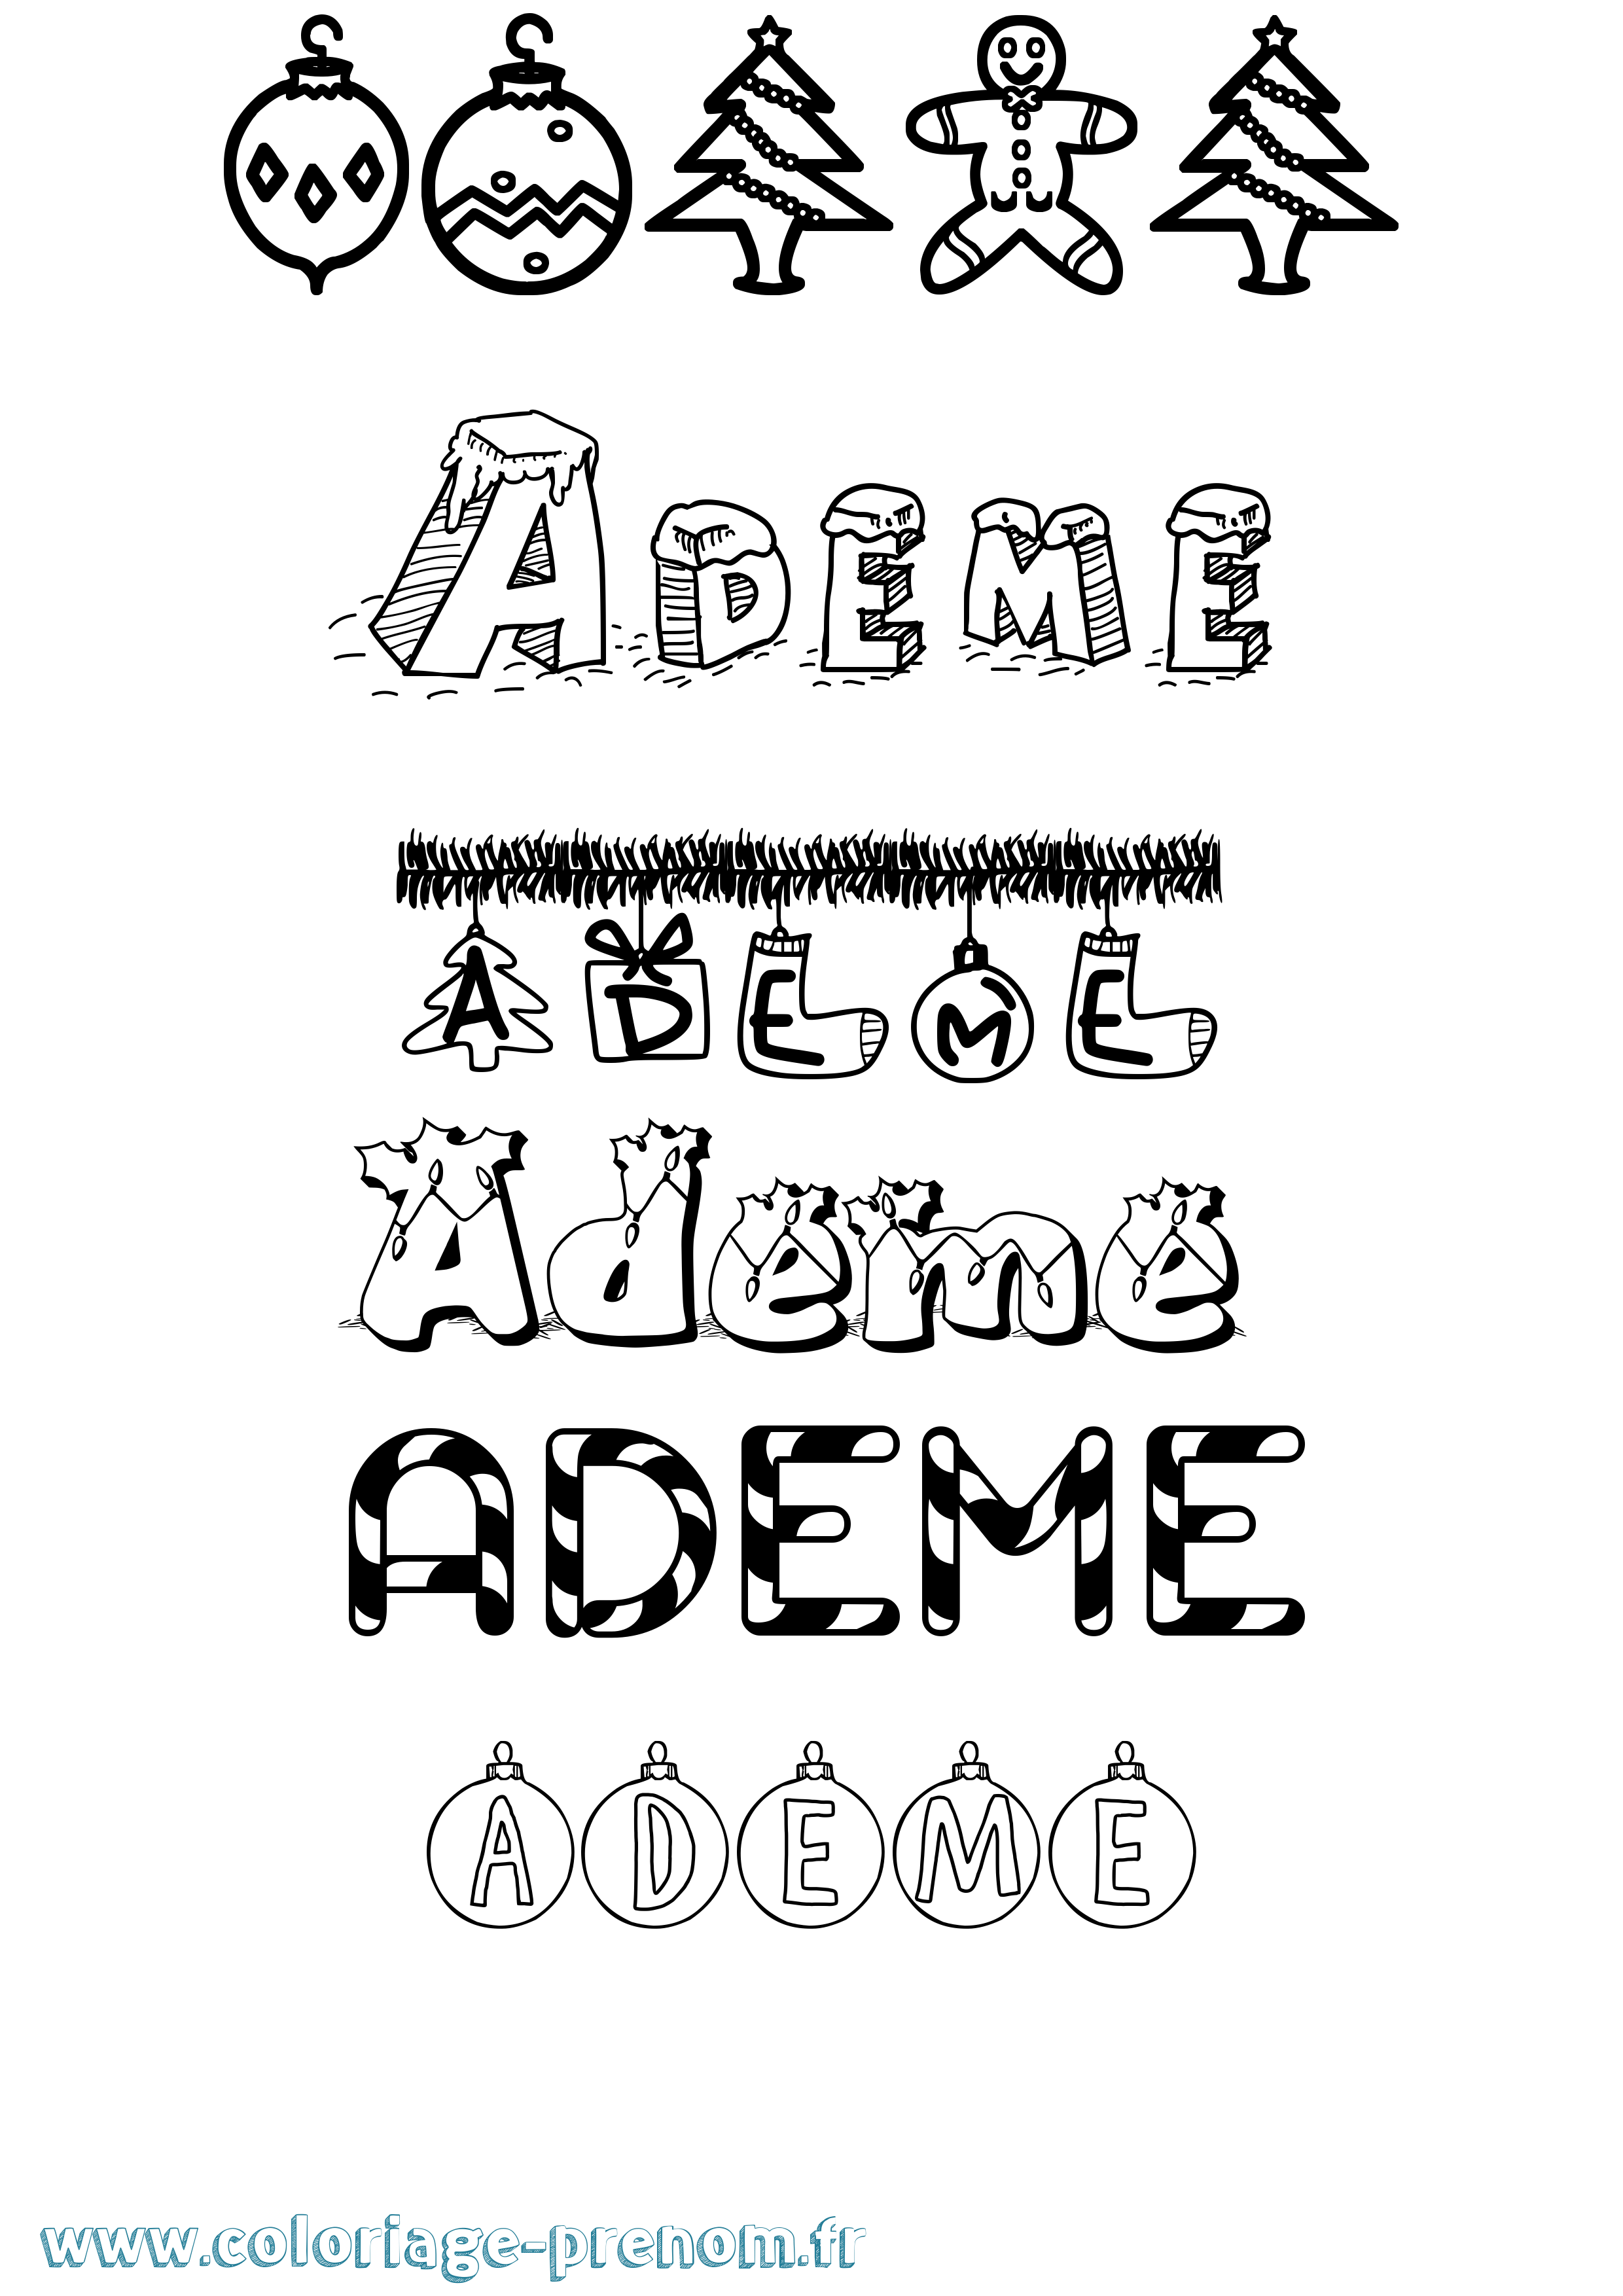 Coloriage prénom Ademe Noël